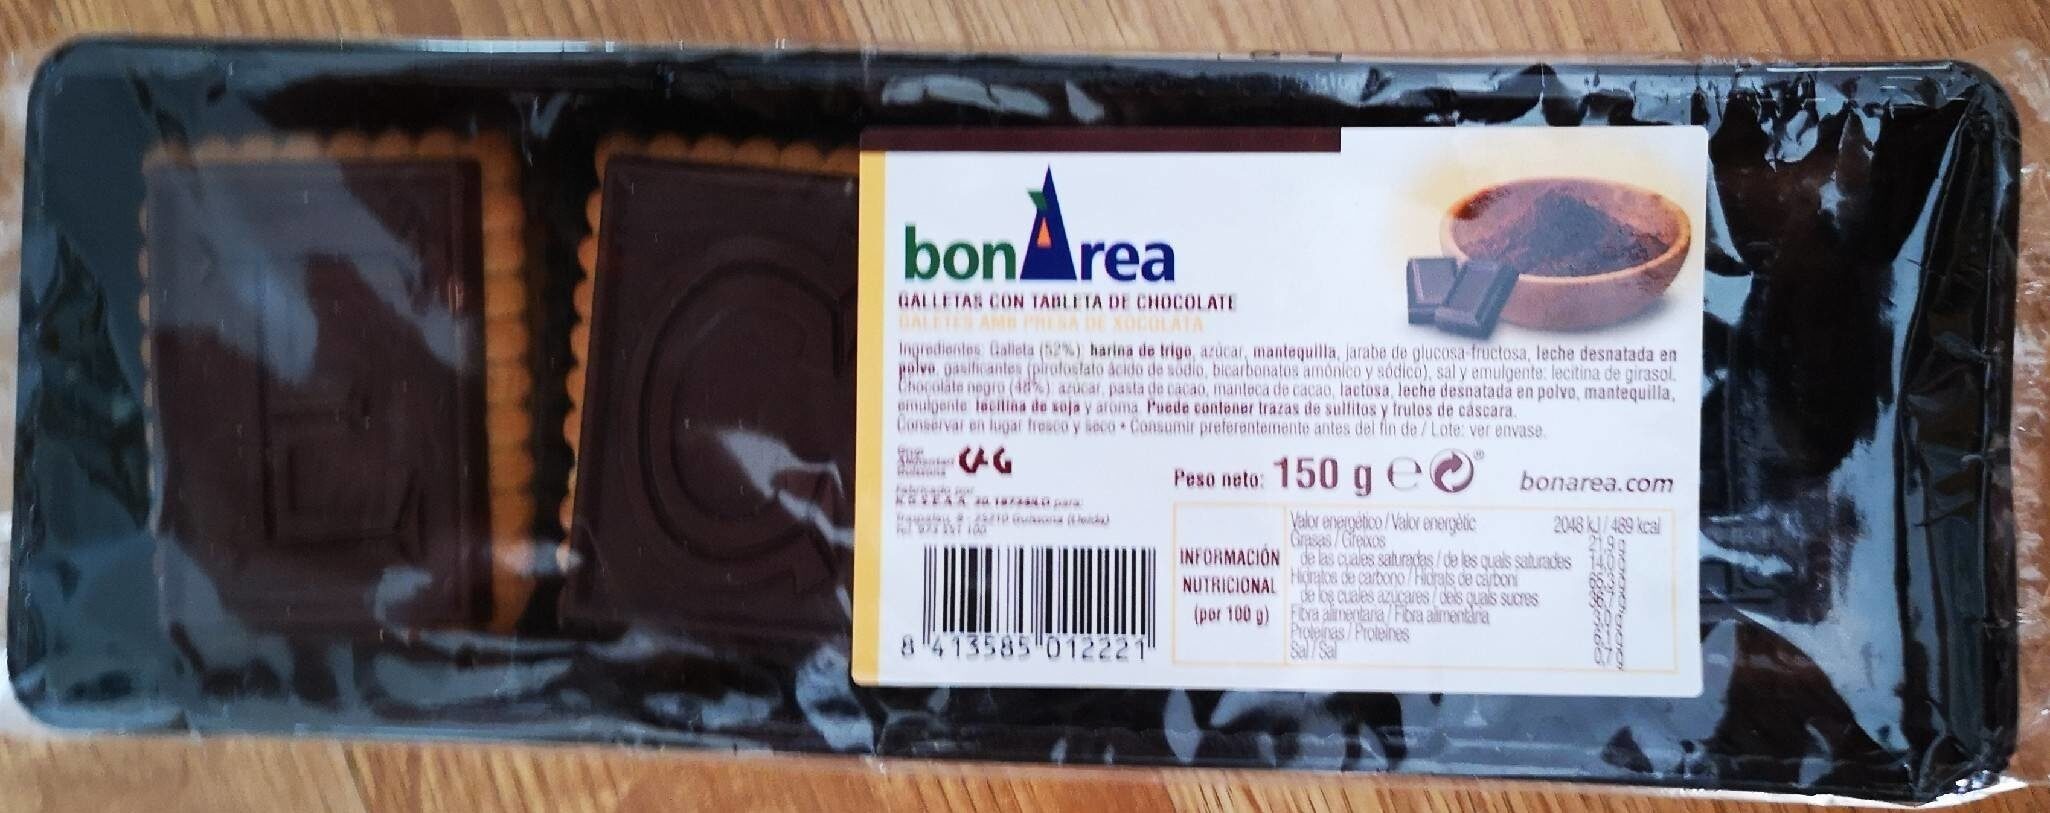 Galletas con tableta de chocolate - Product - es